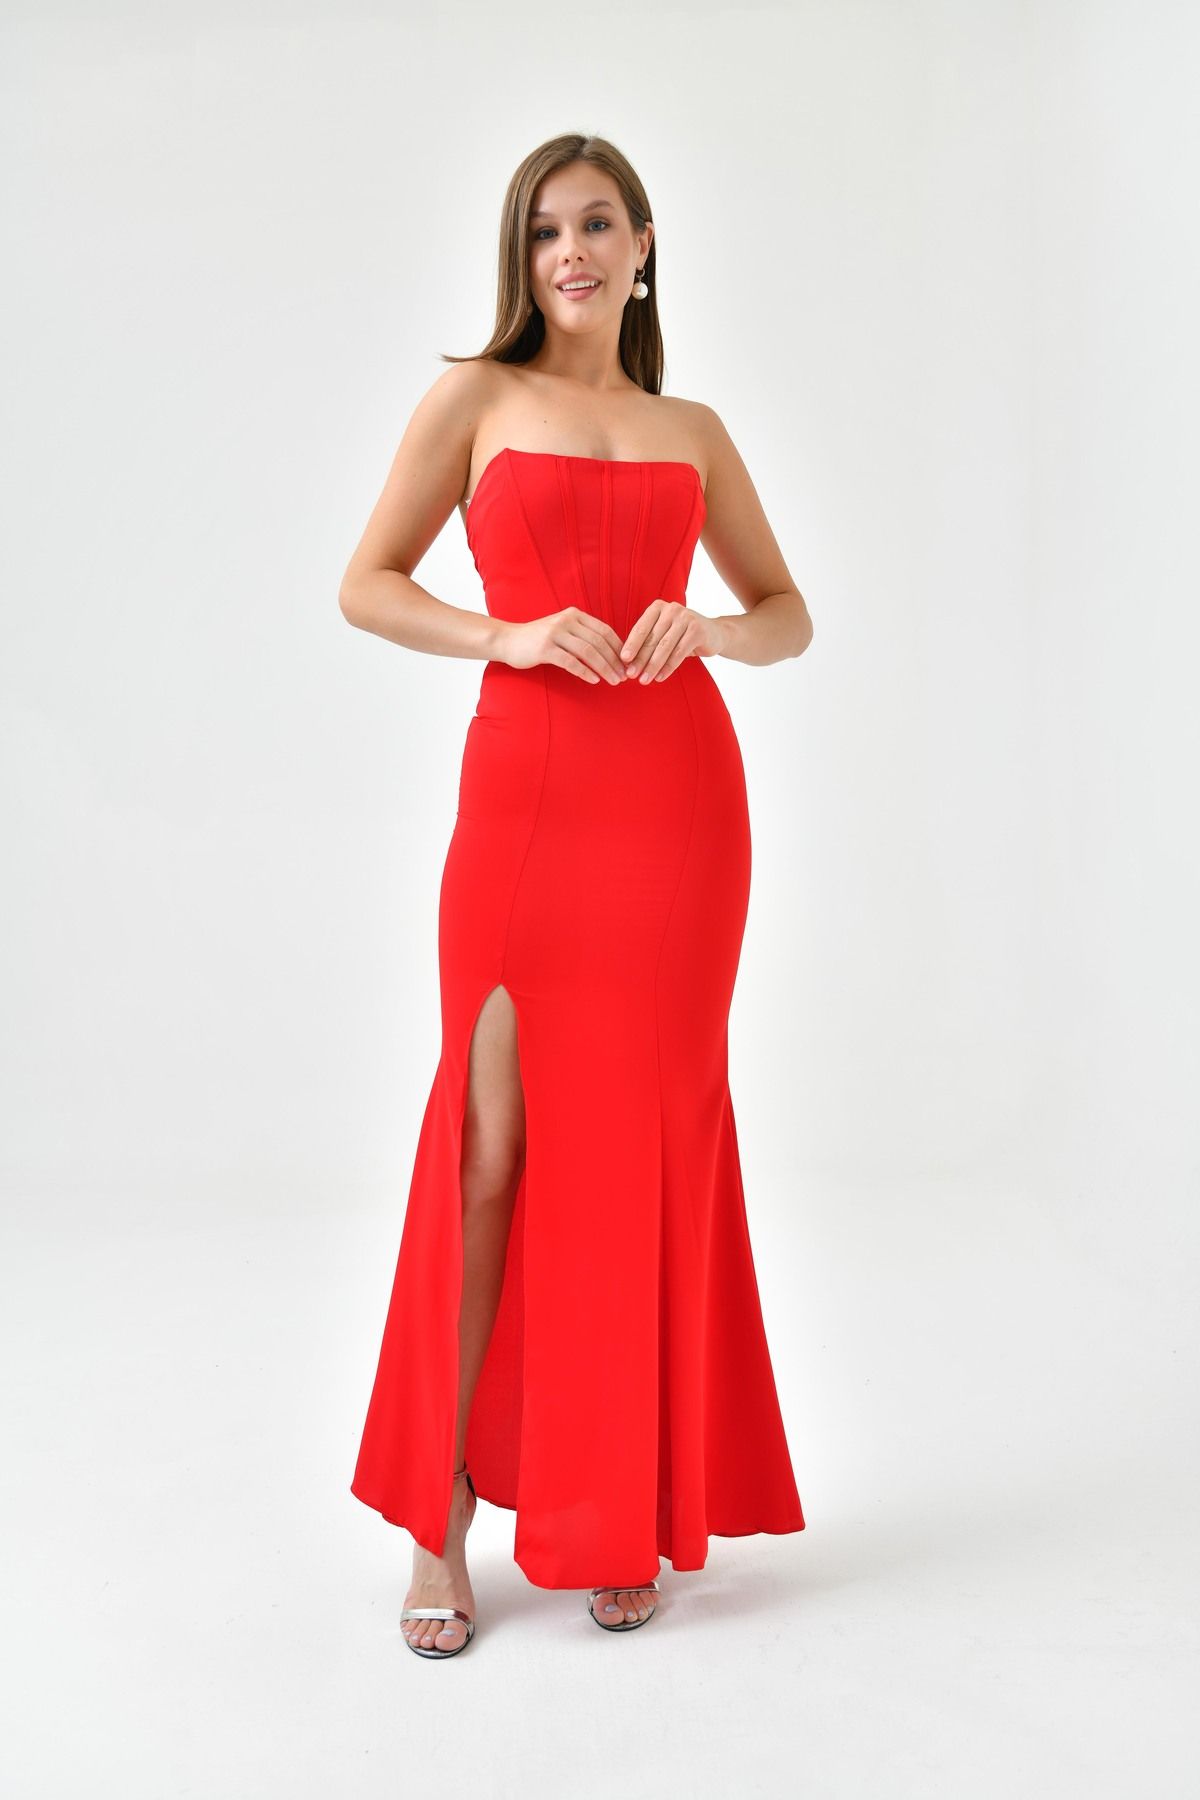 lovebox Kadın Straplez Yaka Korseli Tasarım Yırtmaç Detaylı Kırmızı Maxi Abiye Elbise 167